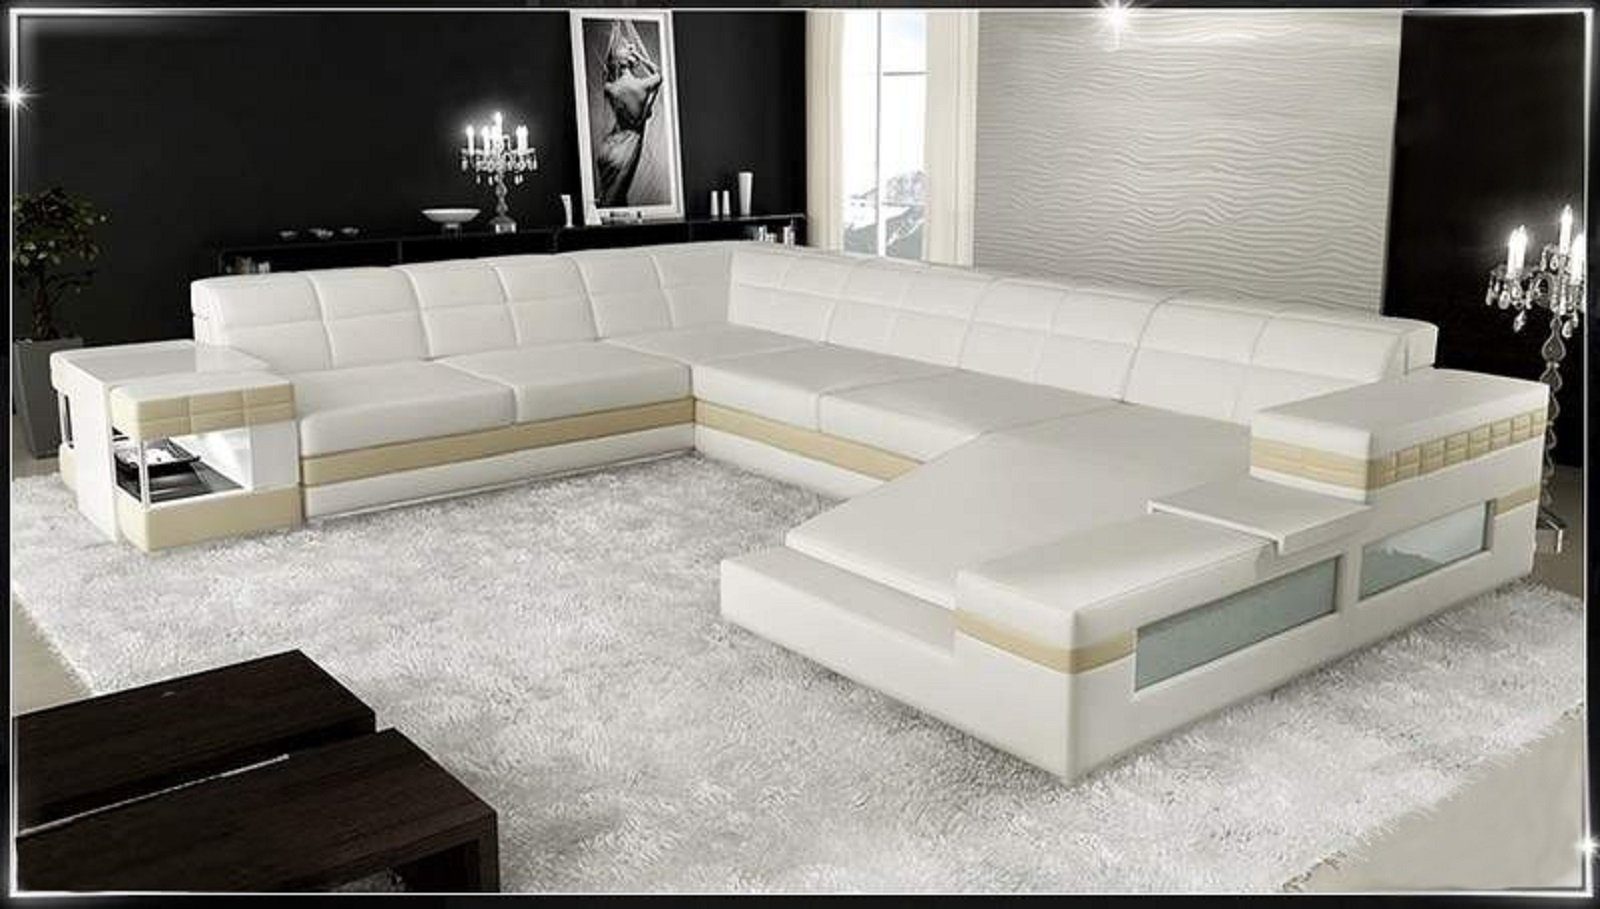 JVmoebel Ecksofa Design Ecksofa Sofa Polster Ledersofa Eckgarnitur in Europe Made Weiß/Beige Sofa, Couch